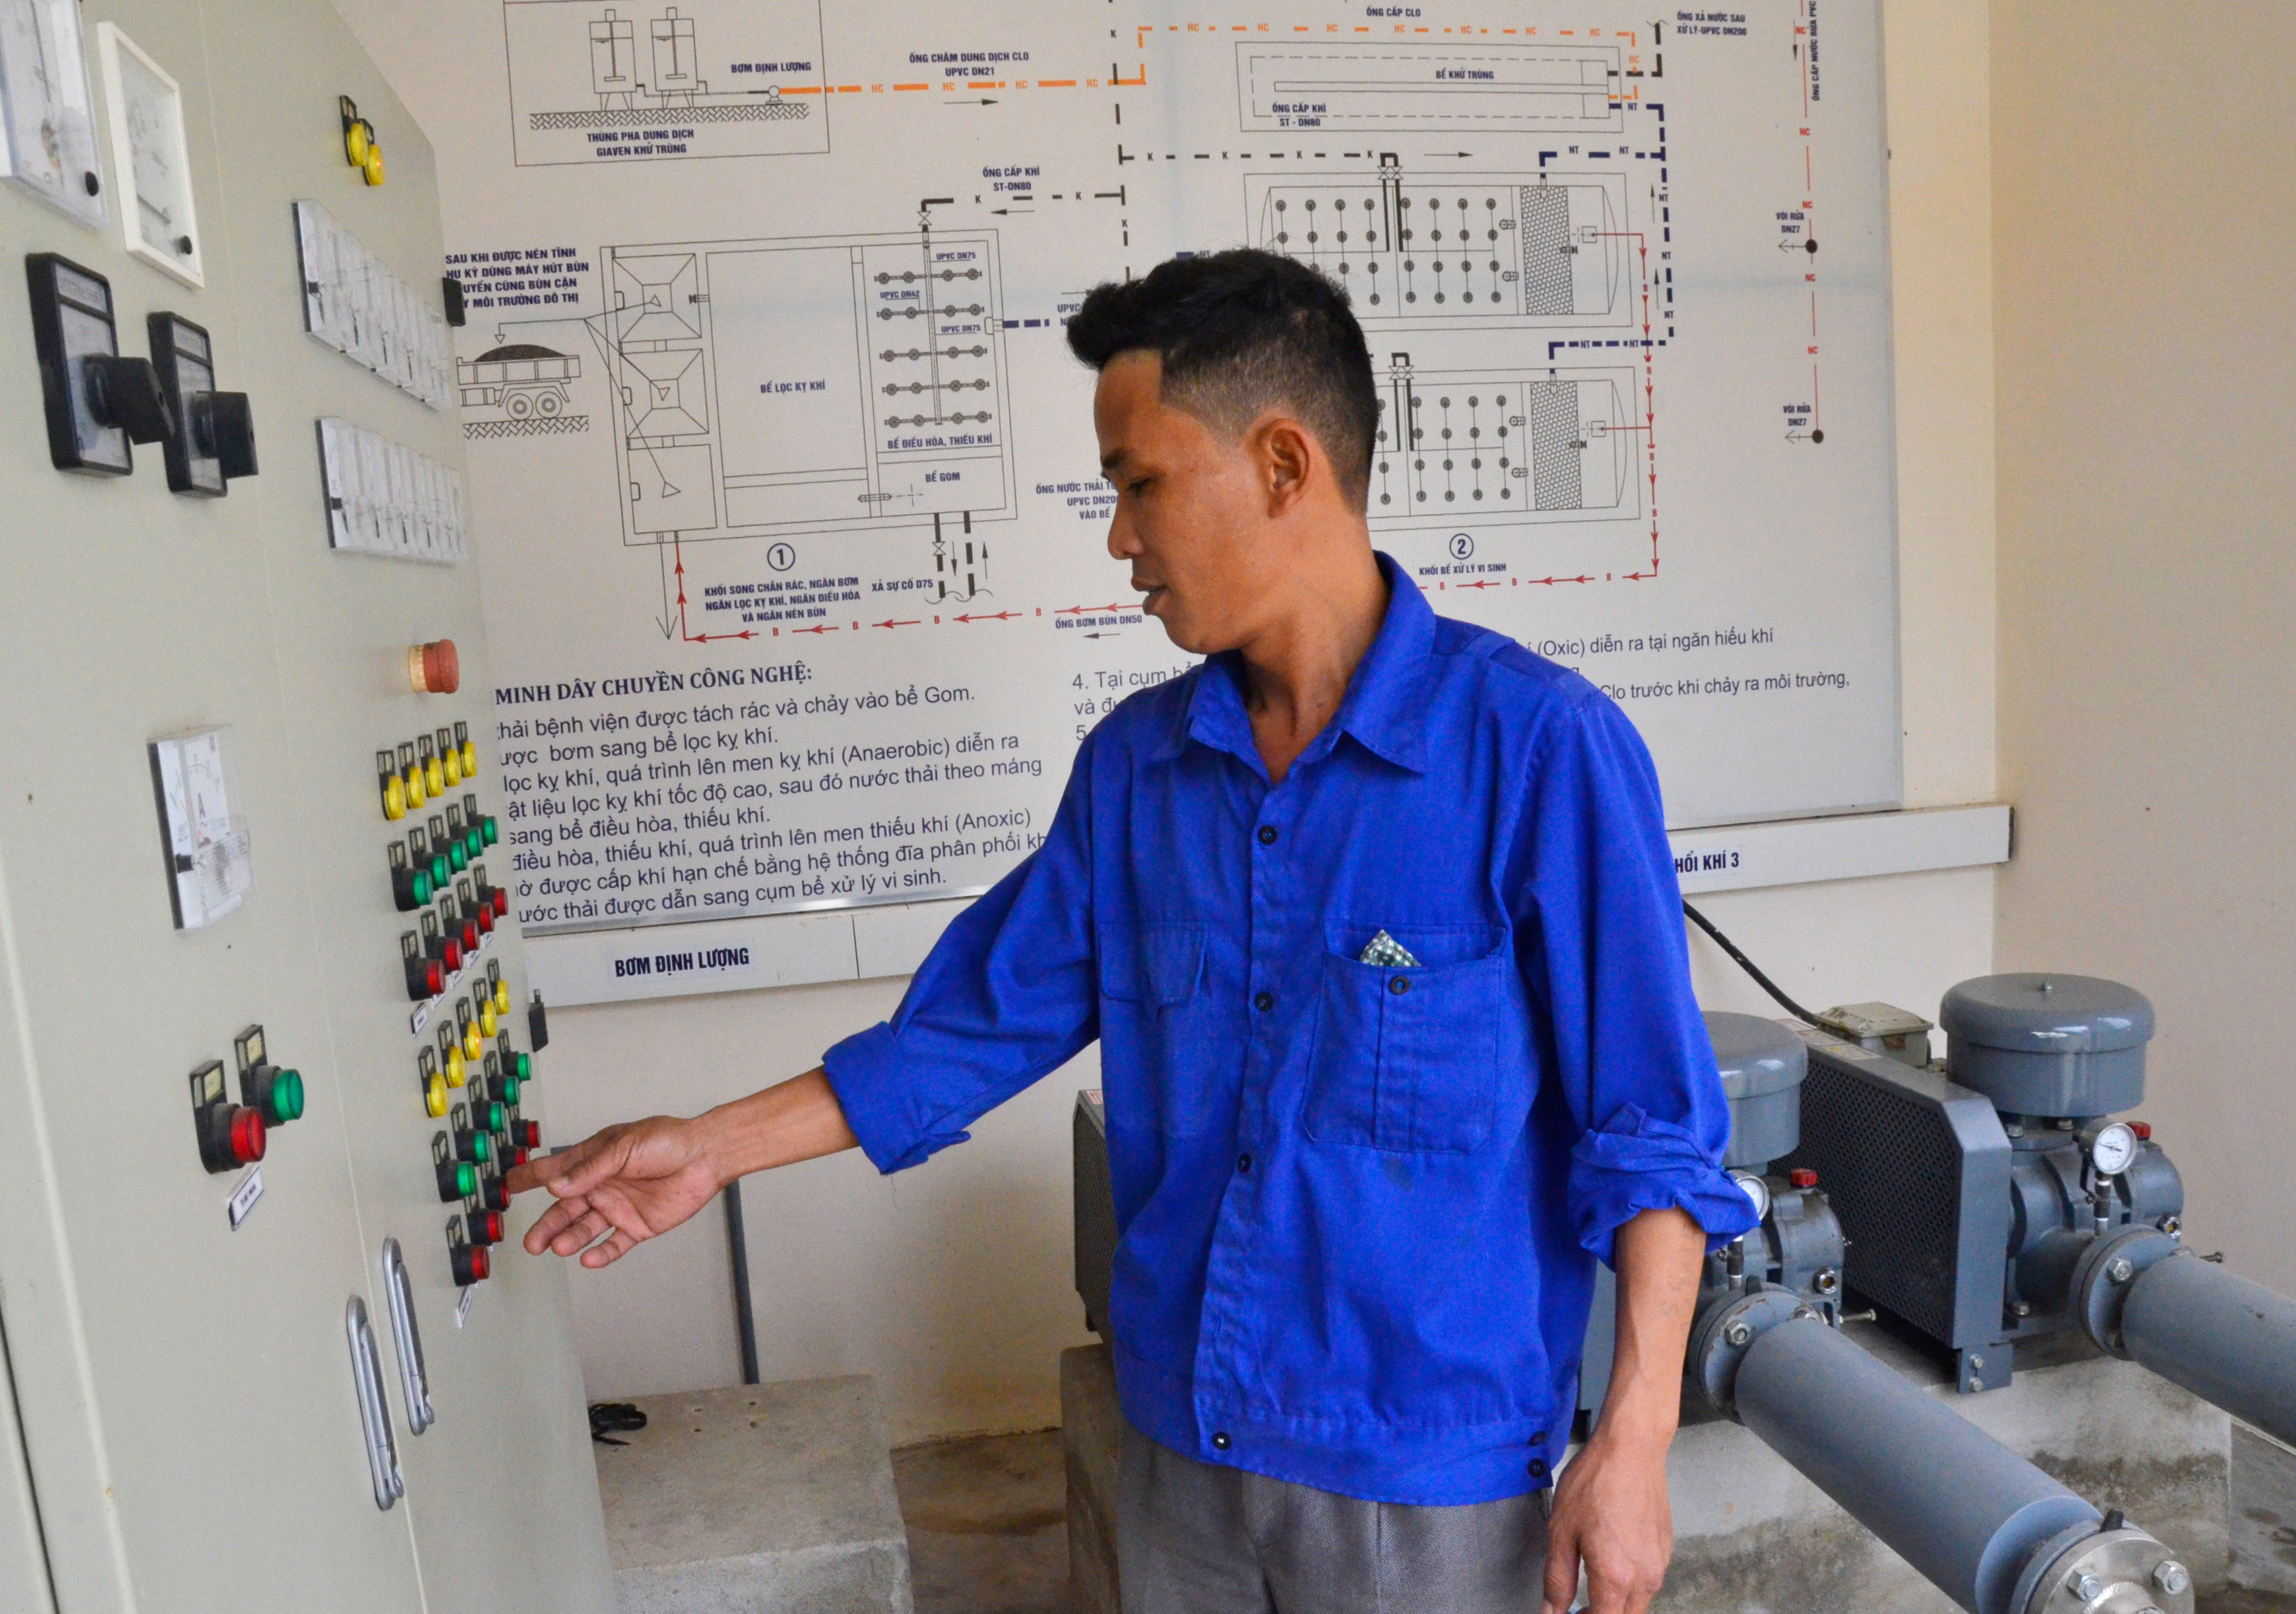 Hệ thống xử lý chất thải Ngân hàng Thế giới tài trợ góp phần giải quyết ô nhiễm môi trường tại Bệnh viện Lao và bệnh phổi Nghệ An. Ảnh Thanh Lê